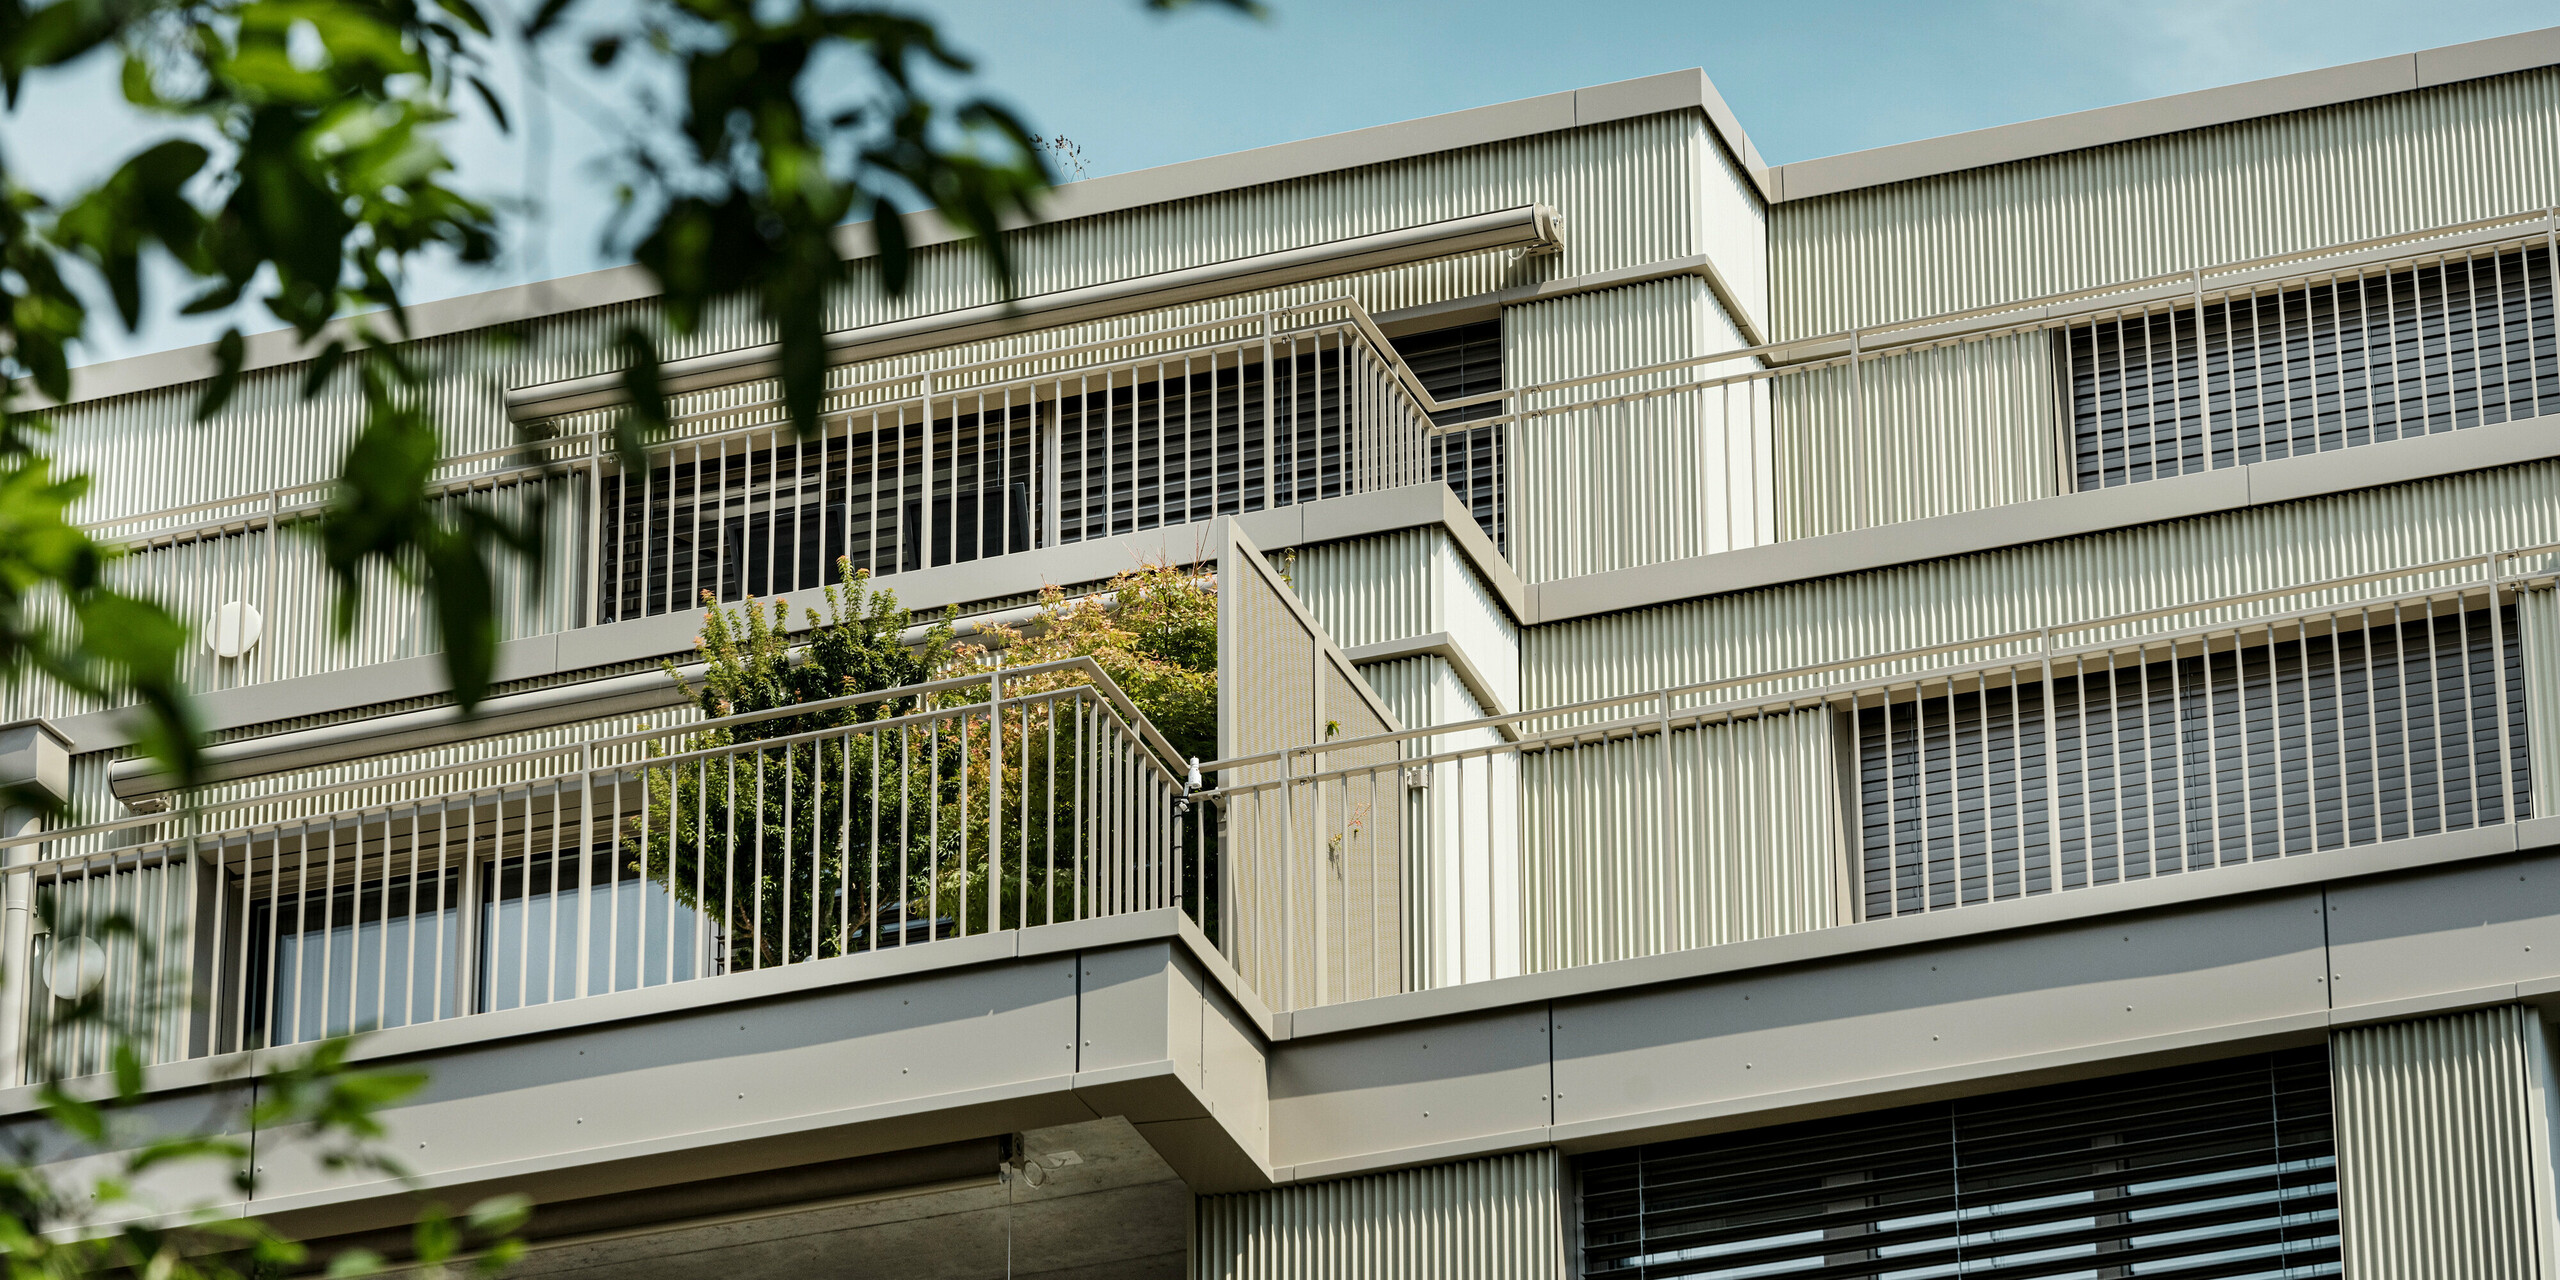 Moderná obytná budova „Stetterhaus“ v Altstetten, Zürich je zahalená do unikátnej fasády – prelamovaného profilu PREFA v špeciálnej farbe perleťová metalická.